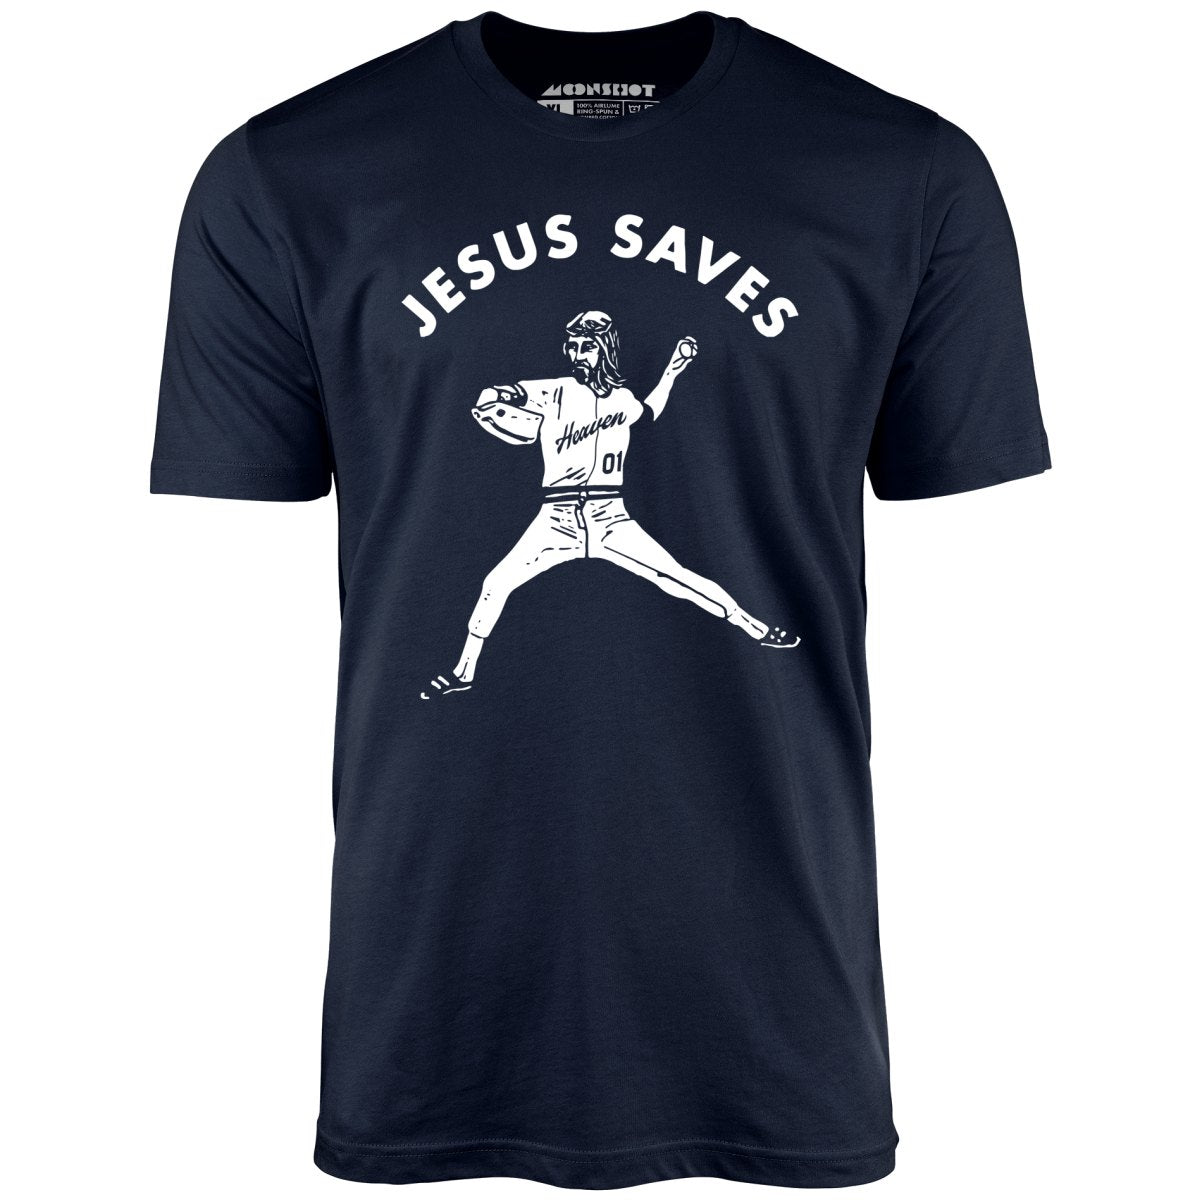 Jesus Saves - Lefty - Unisex T-Shirt